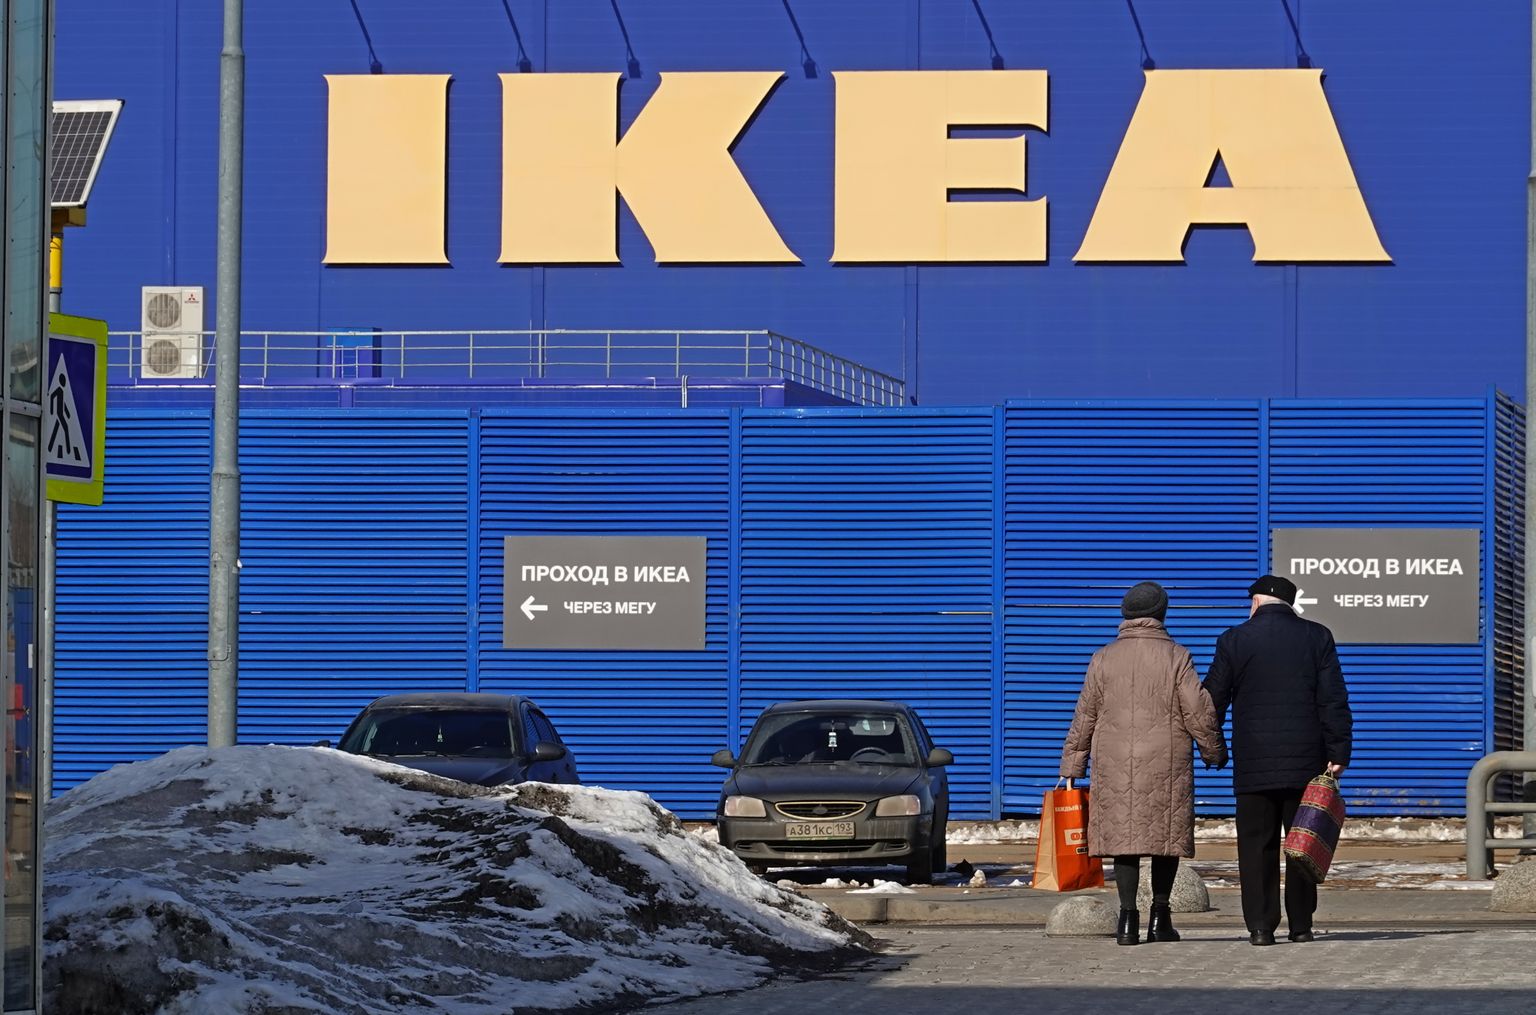 IKEA on Venemaal tegevuse peatanud.